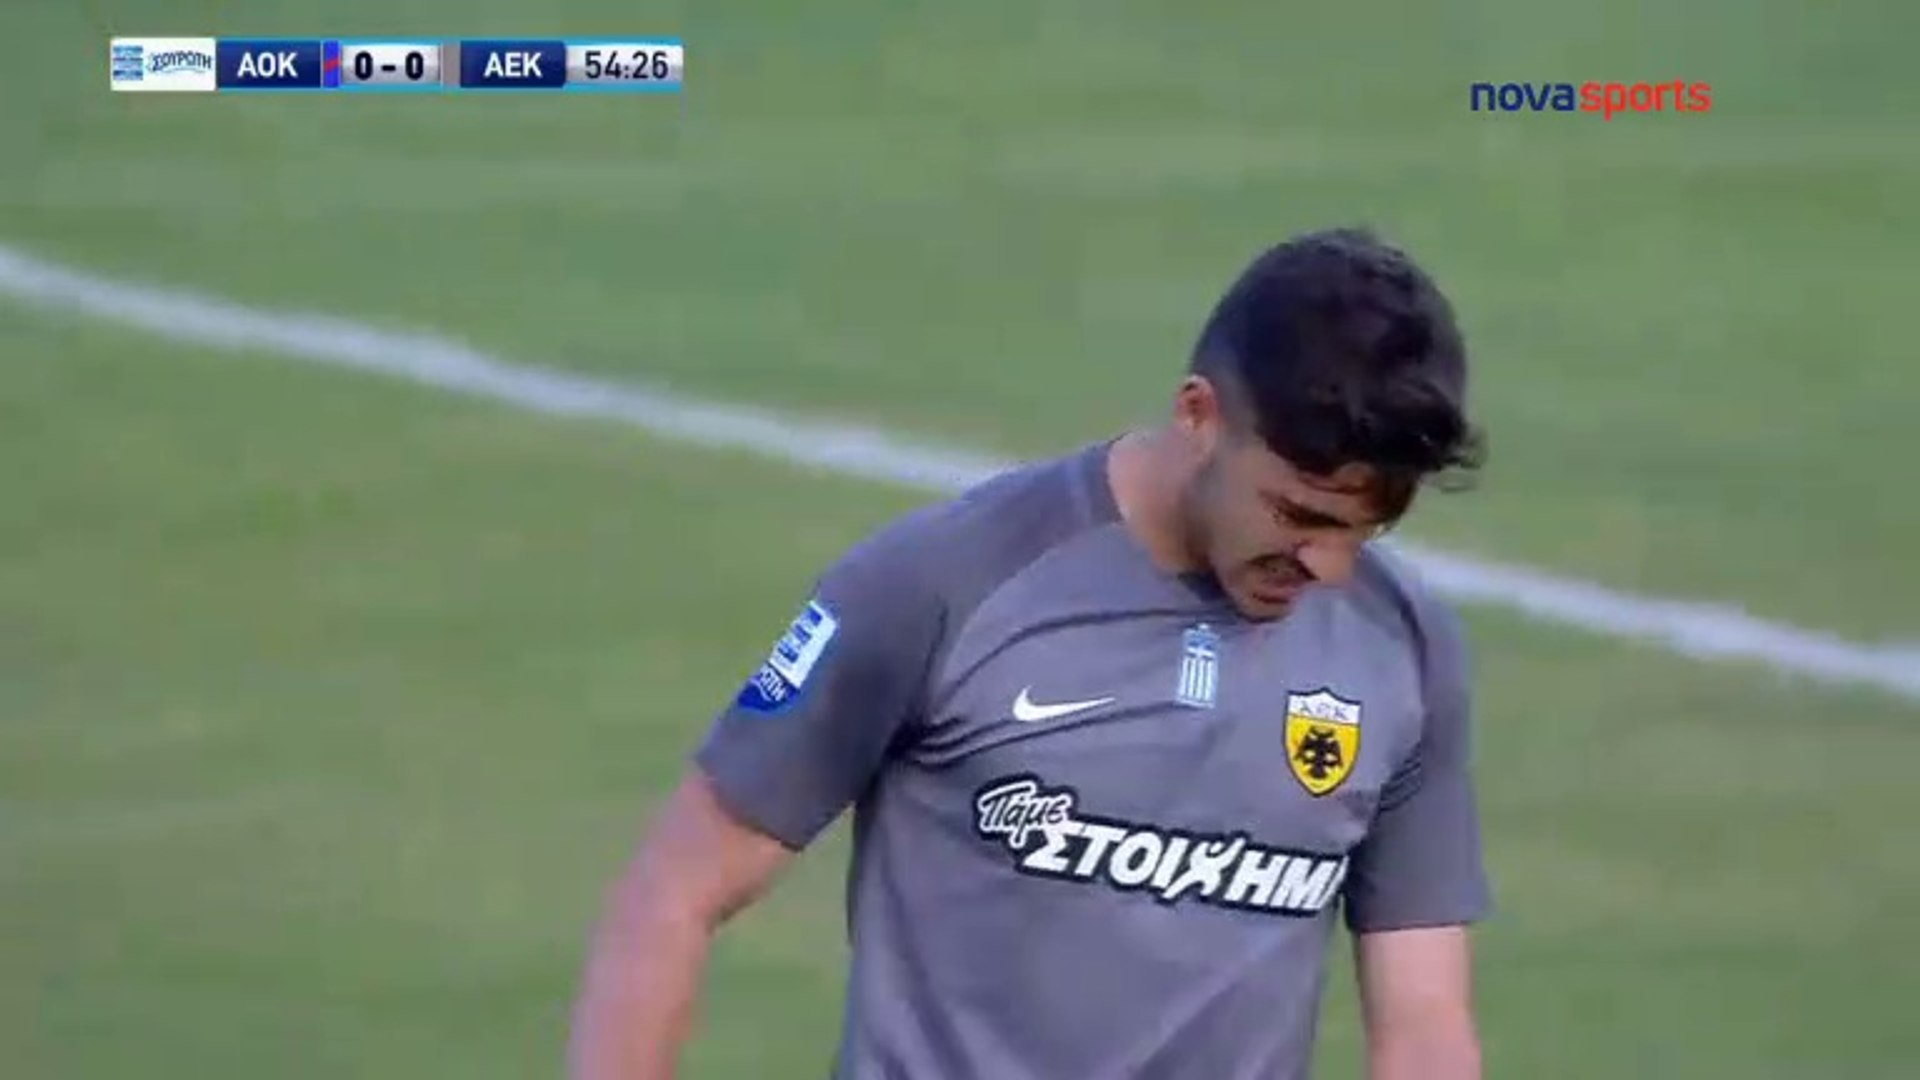 Kerkyra 0-0 AEK - Full Highlights - 29.04.2018 - video Dailymotion